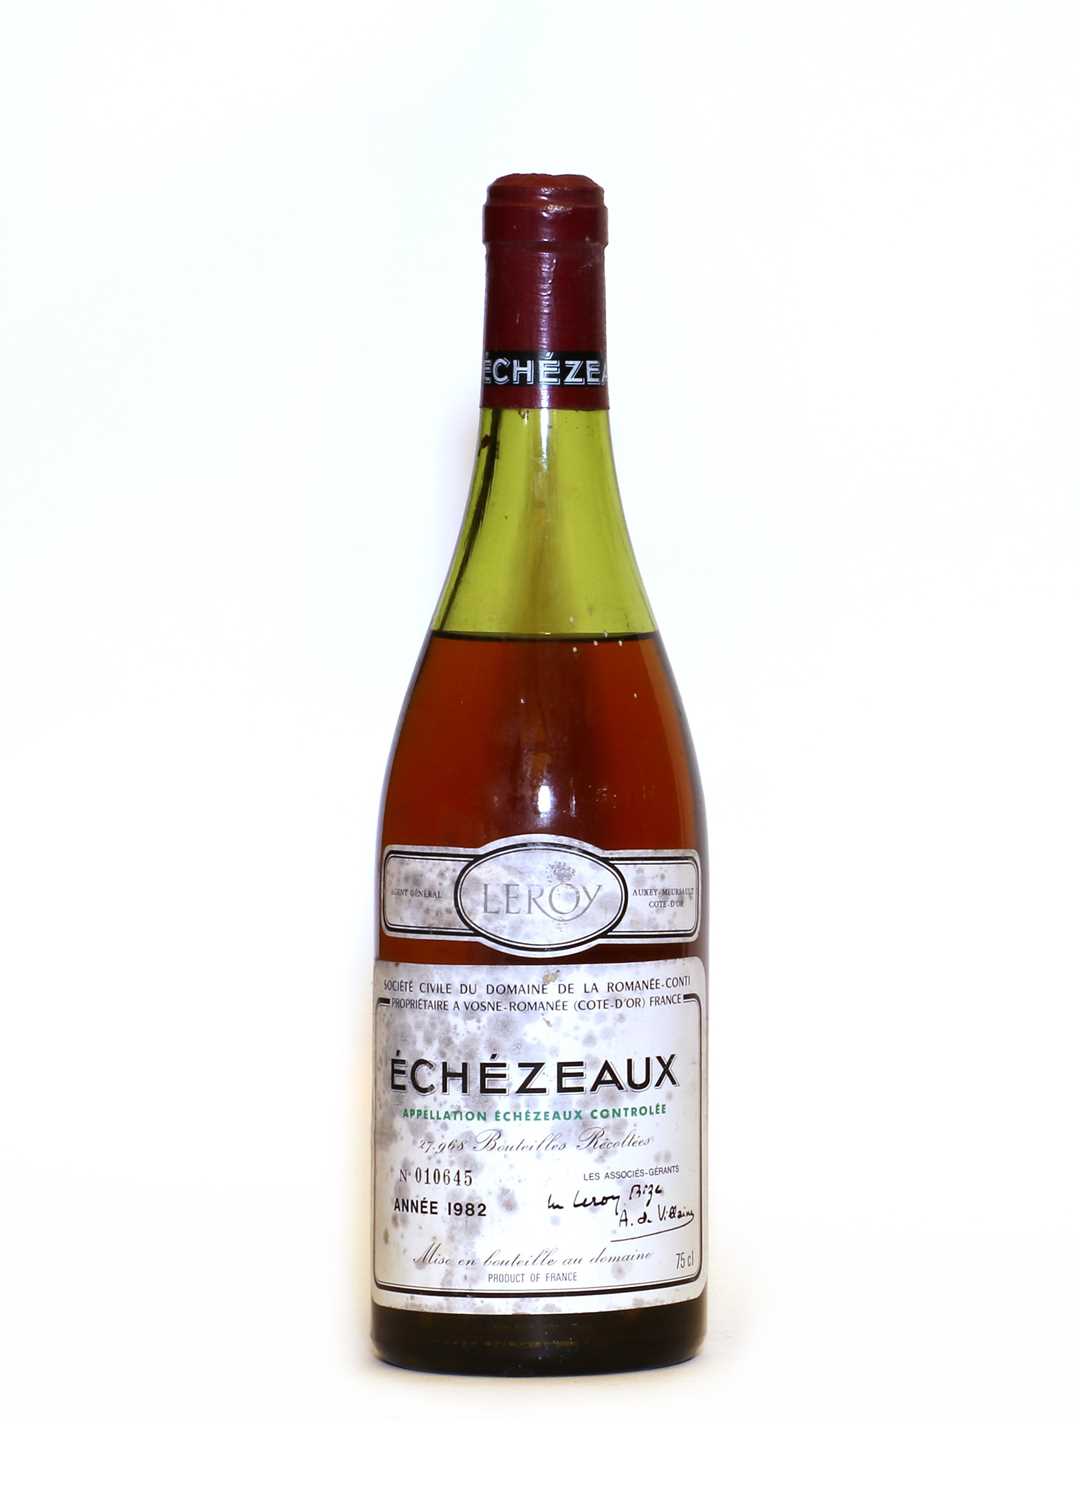 Lot 47 - Echezeaux, Grand Cru, Domaine de la Romanee Conti, 1982, one bottle